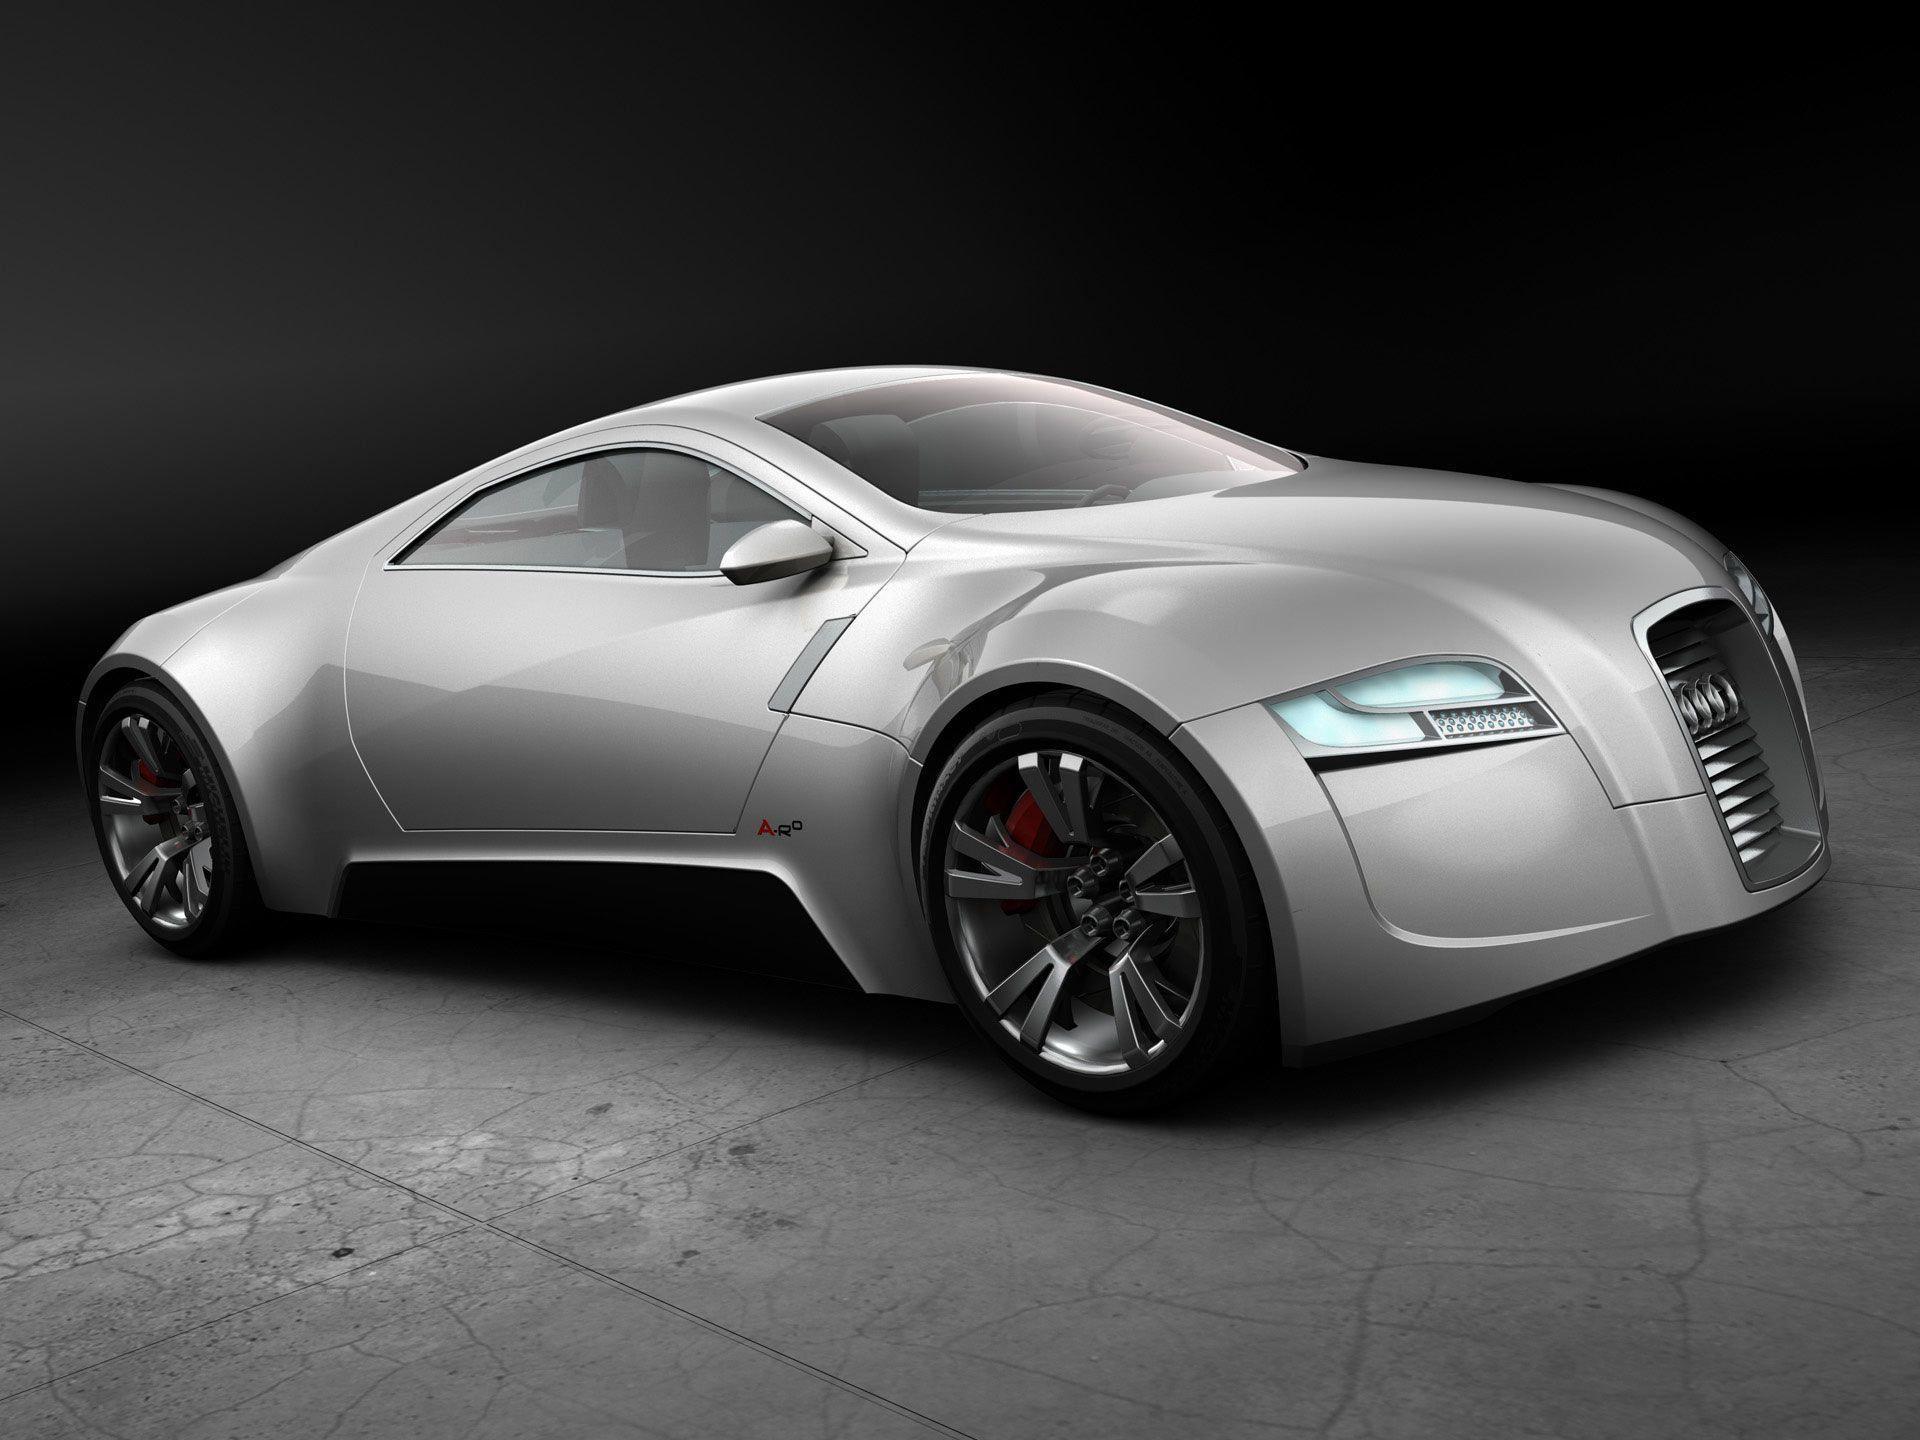 Desktop Wallpaper · Motors · Cars · Audi car desktop wallpaper